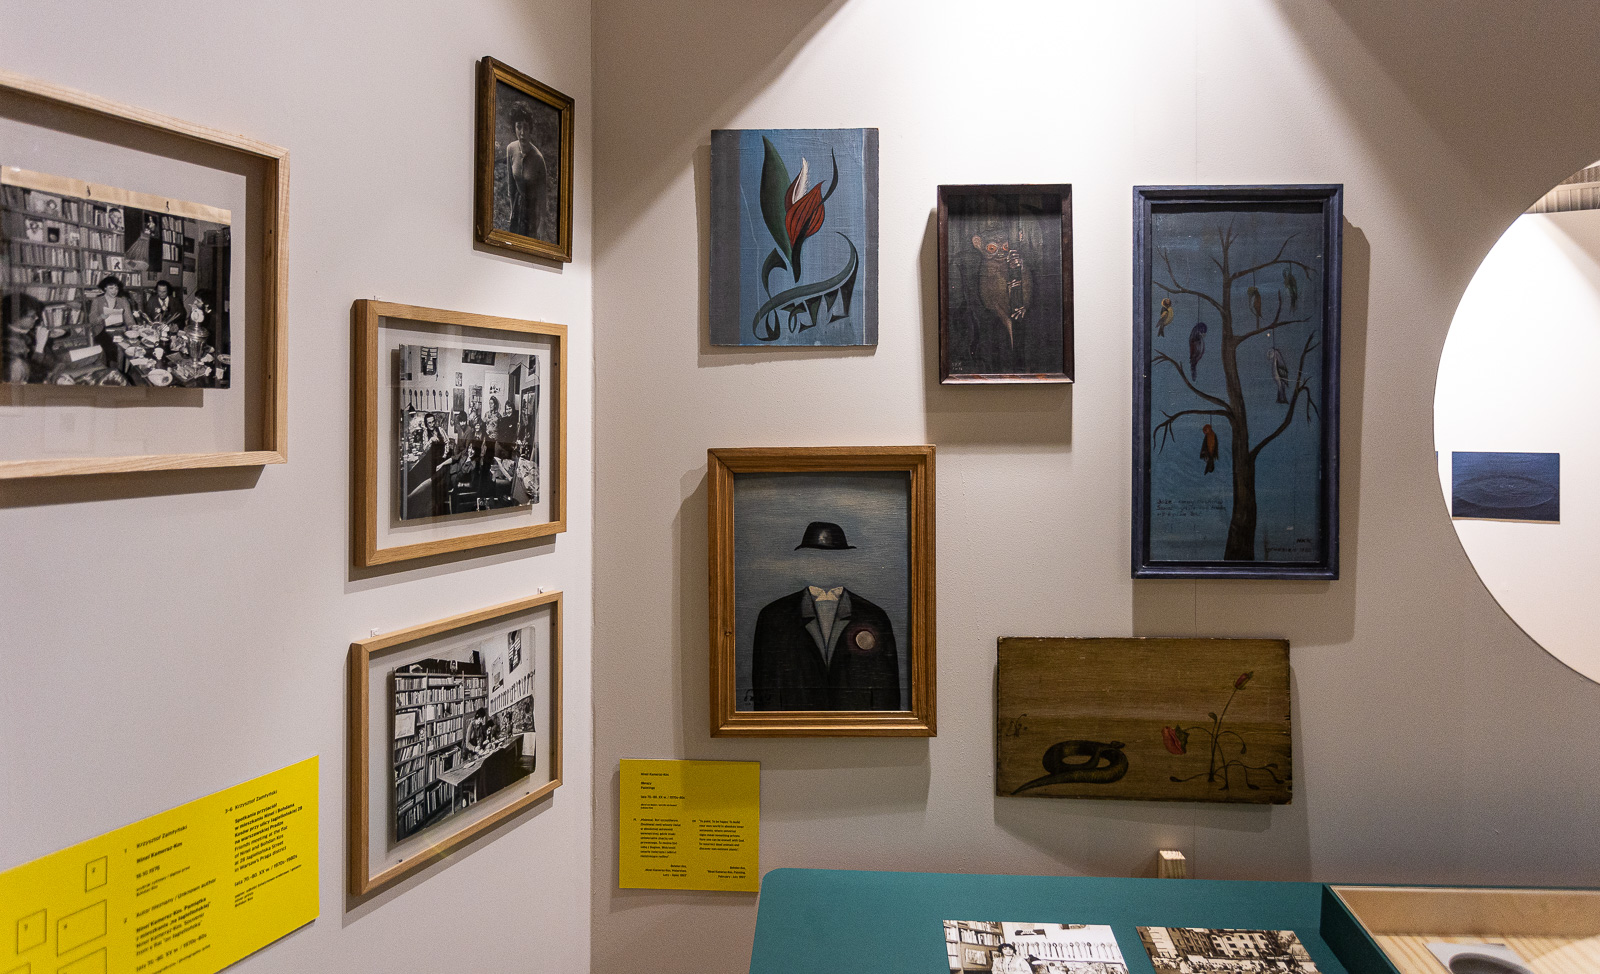 Zdjęcie wystawy „Prawobrzeżne”. Zdjęcia i obrazy w ramkach na ścianie, a przed stoi gablota z przedmiotami.